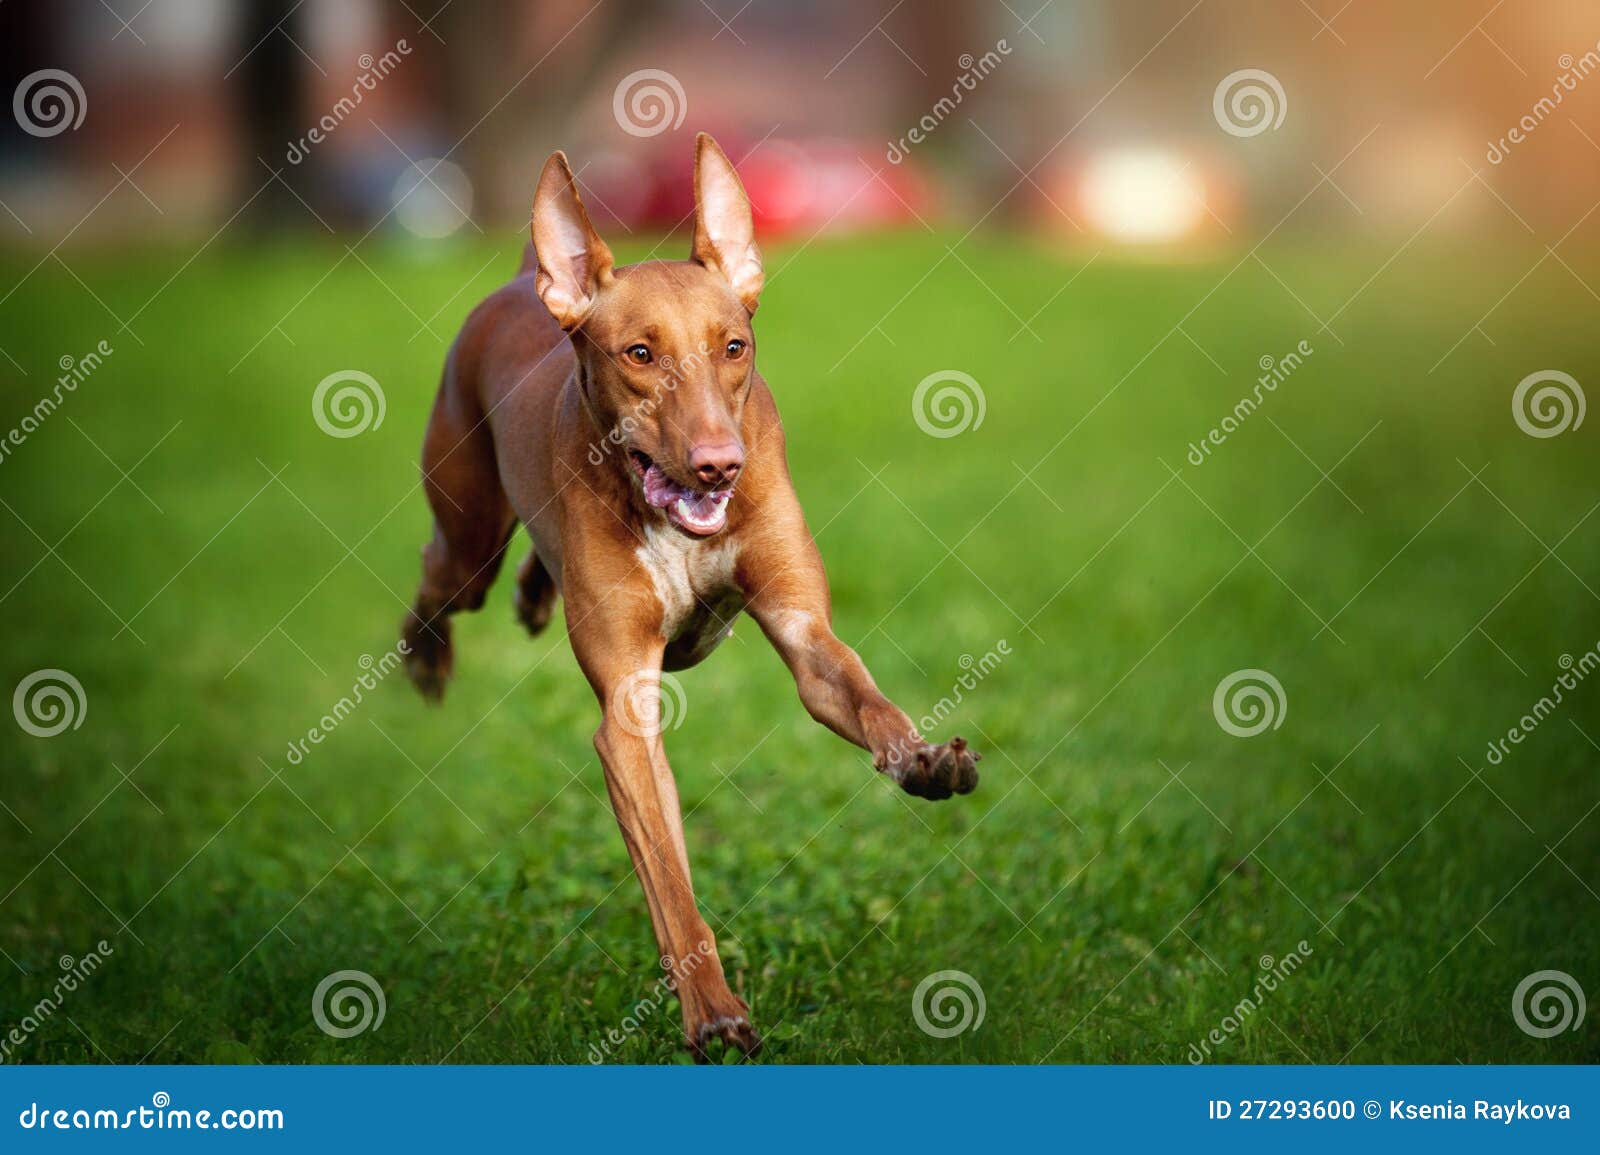 法老王猎犬可以通过视觉、听觉和嗅觉来捕猎 - 知乎